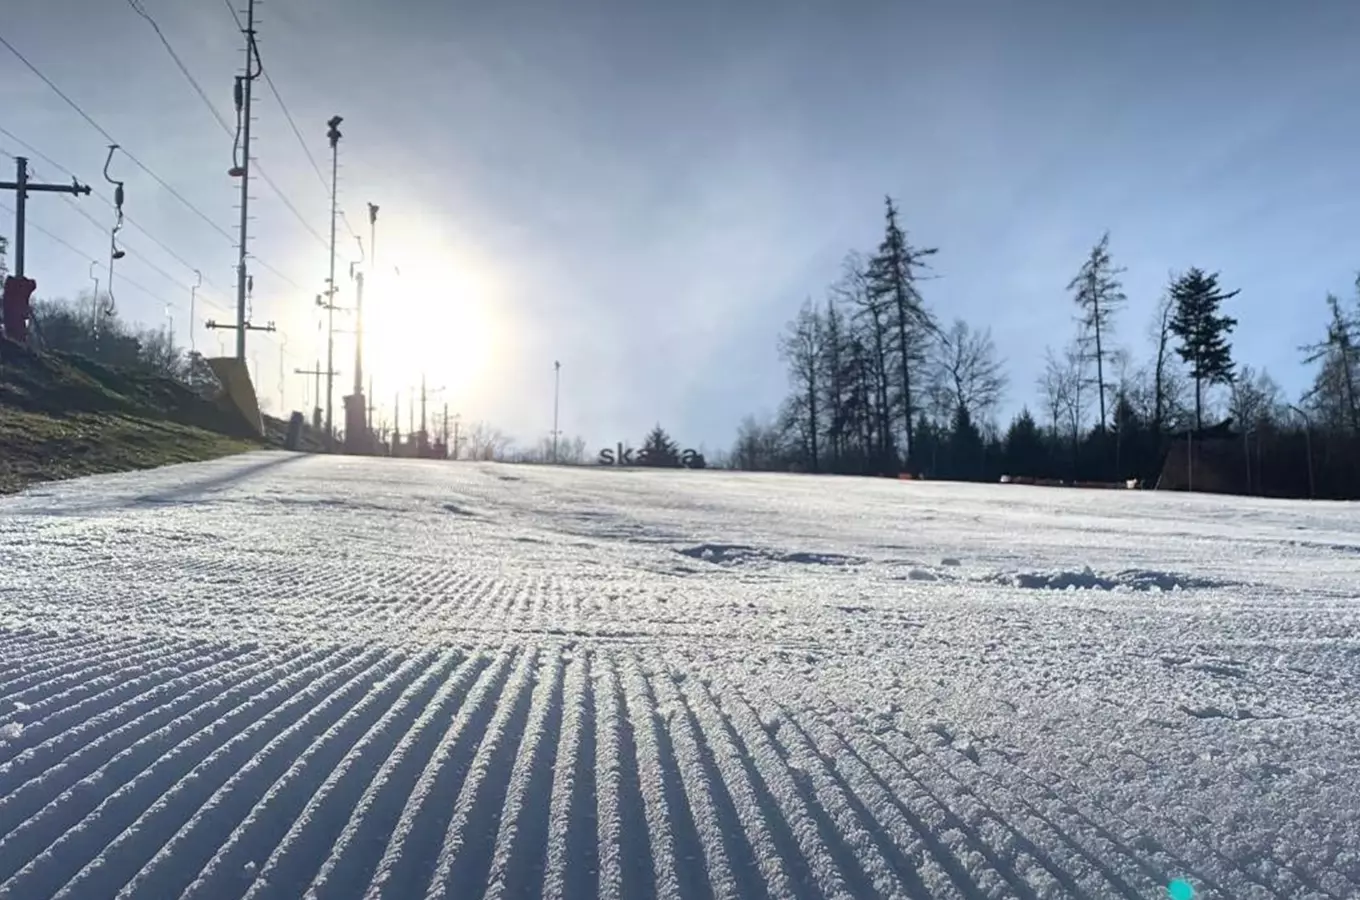 Zdroj foto: FB Ski areál Skalka